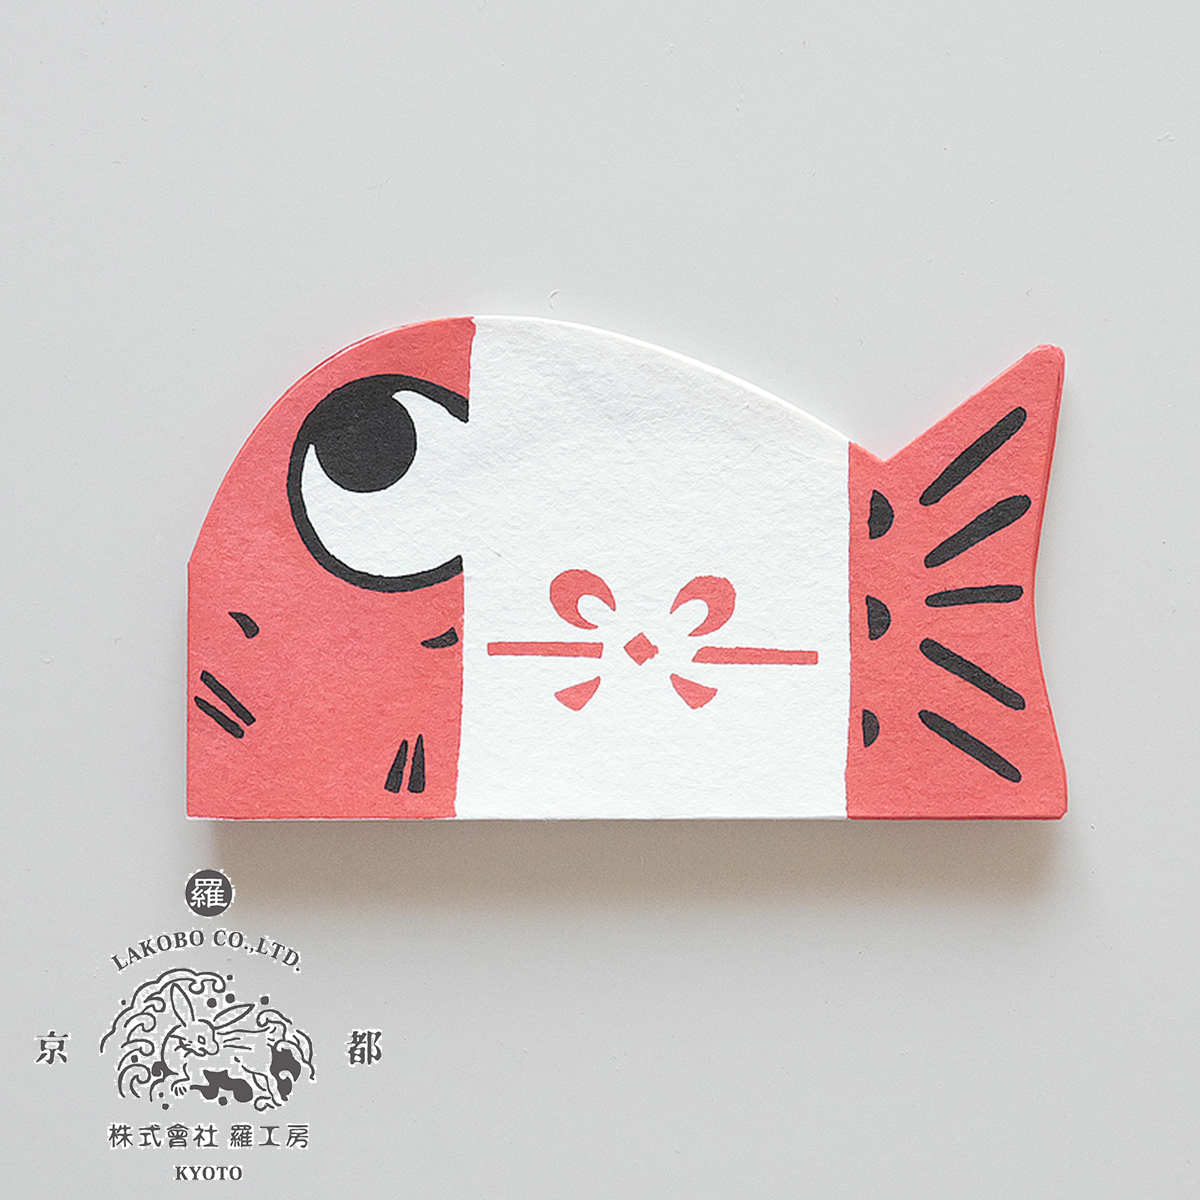 日本製【羅工房】京都の手摺りぽち袋 かわりぽち袋 お目出鯛袋